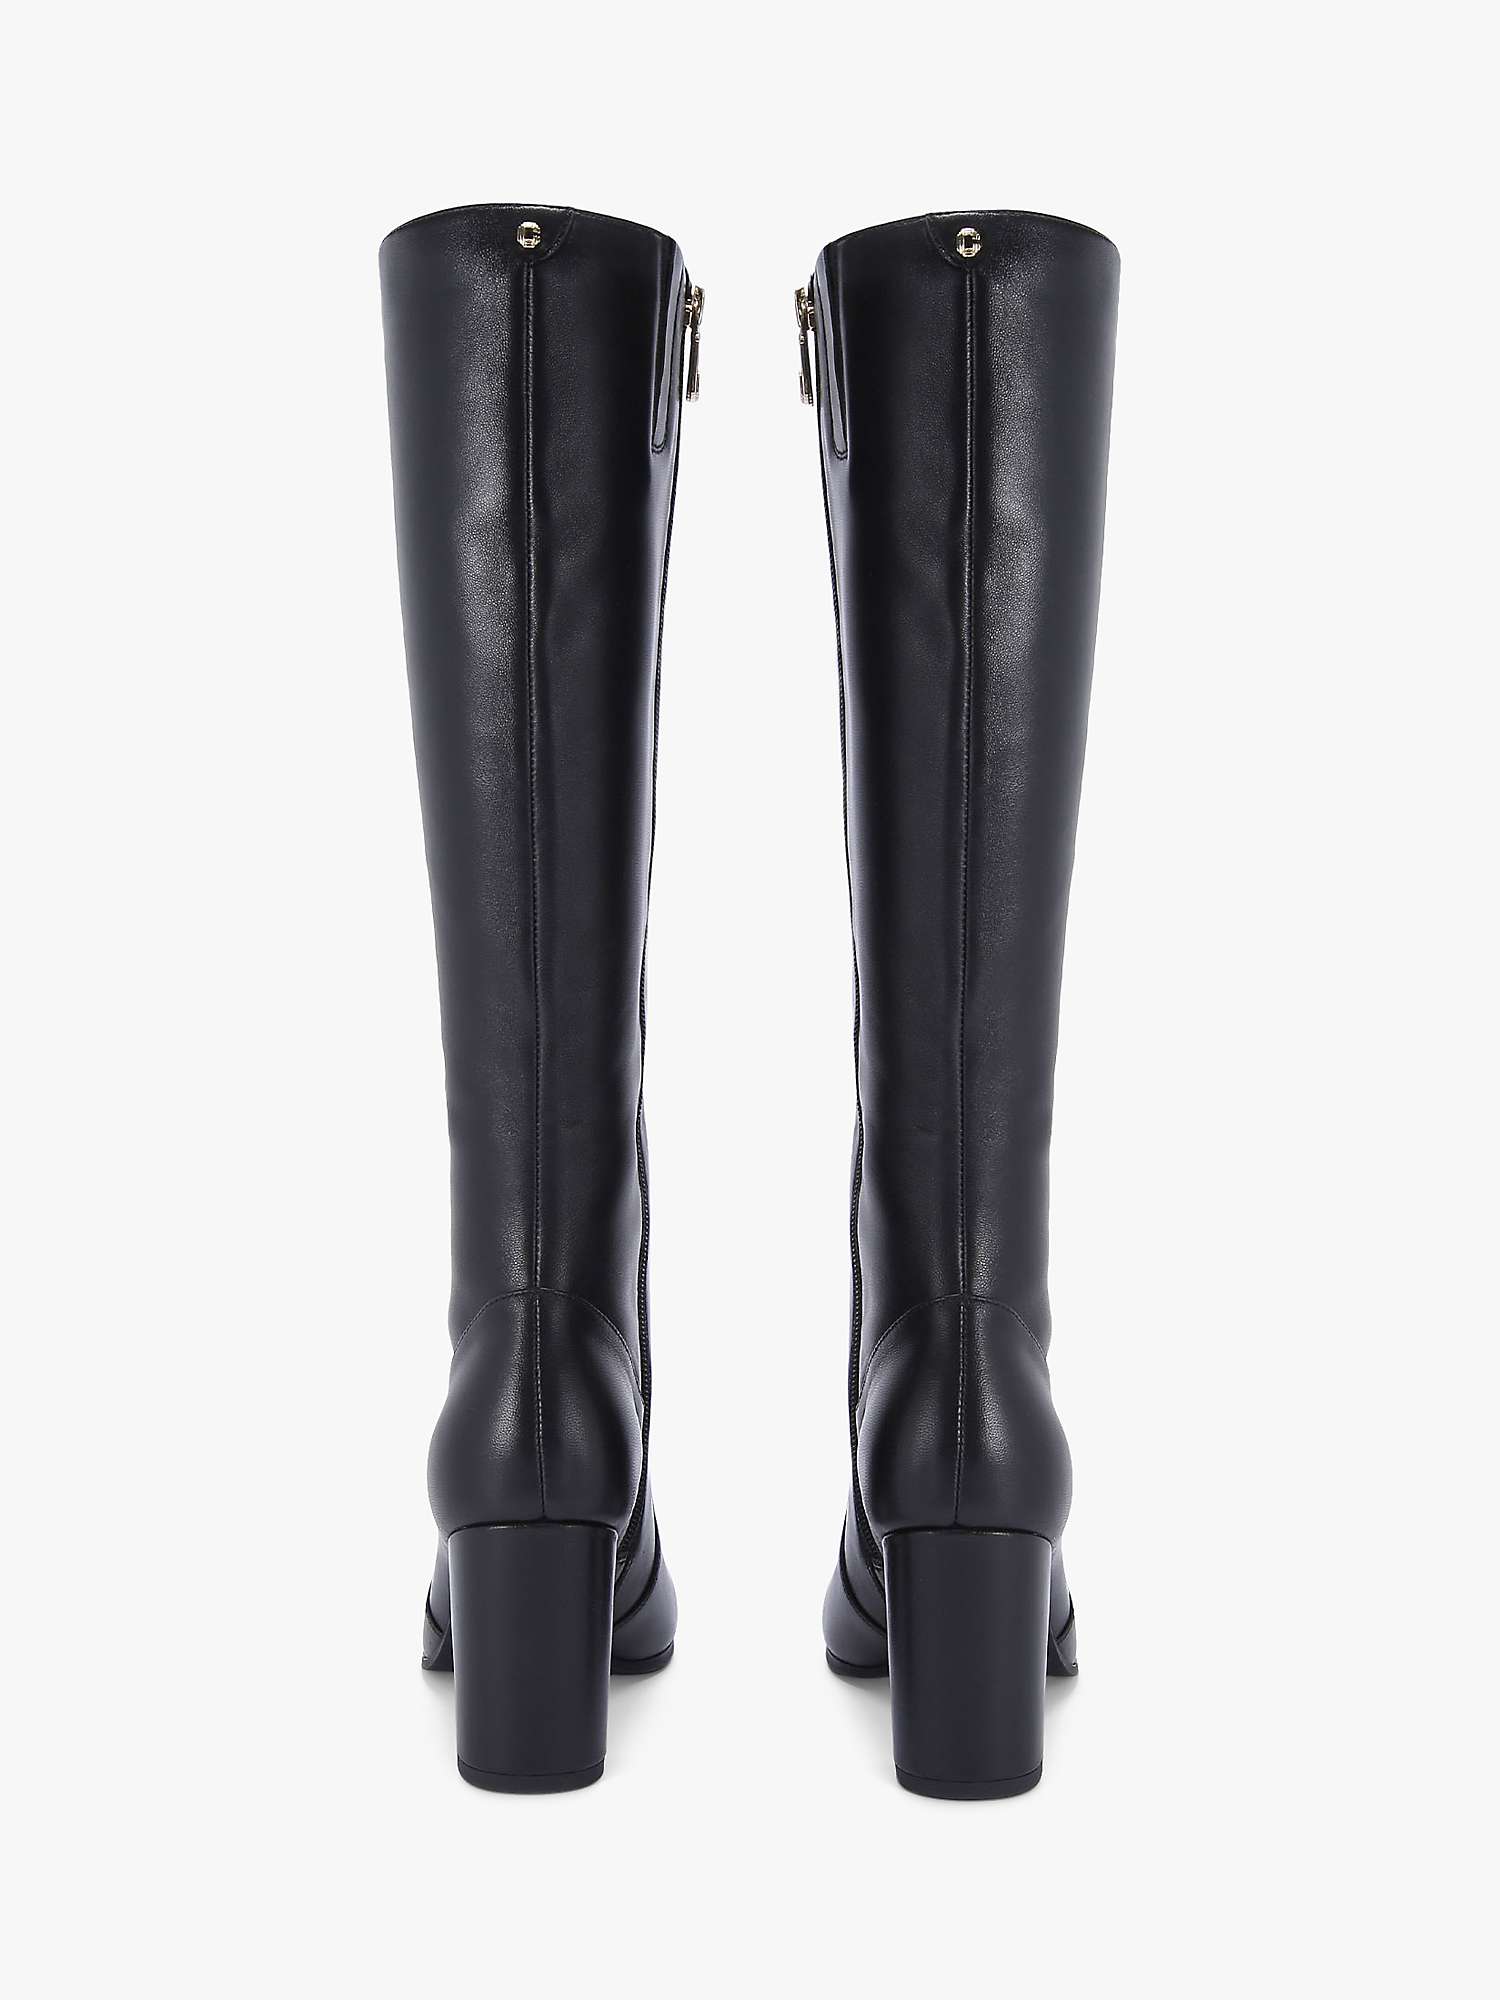 Buy Carvela Pose Leather Knee High Boots, Black Online at johnlewis.com